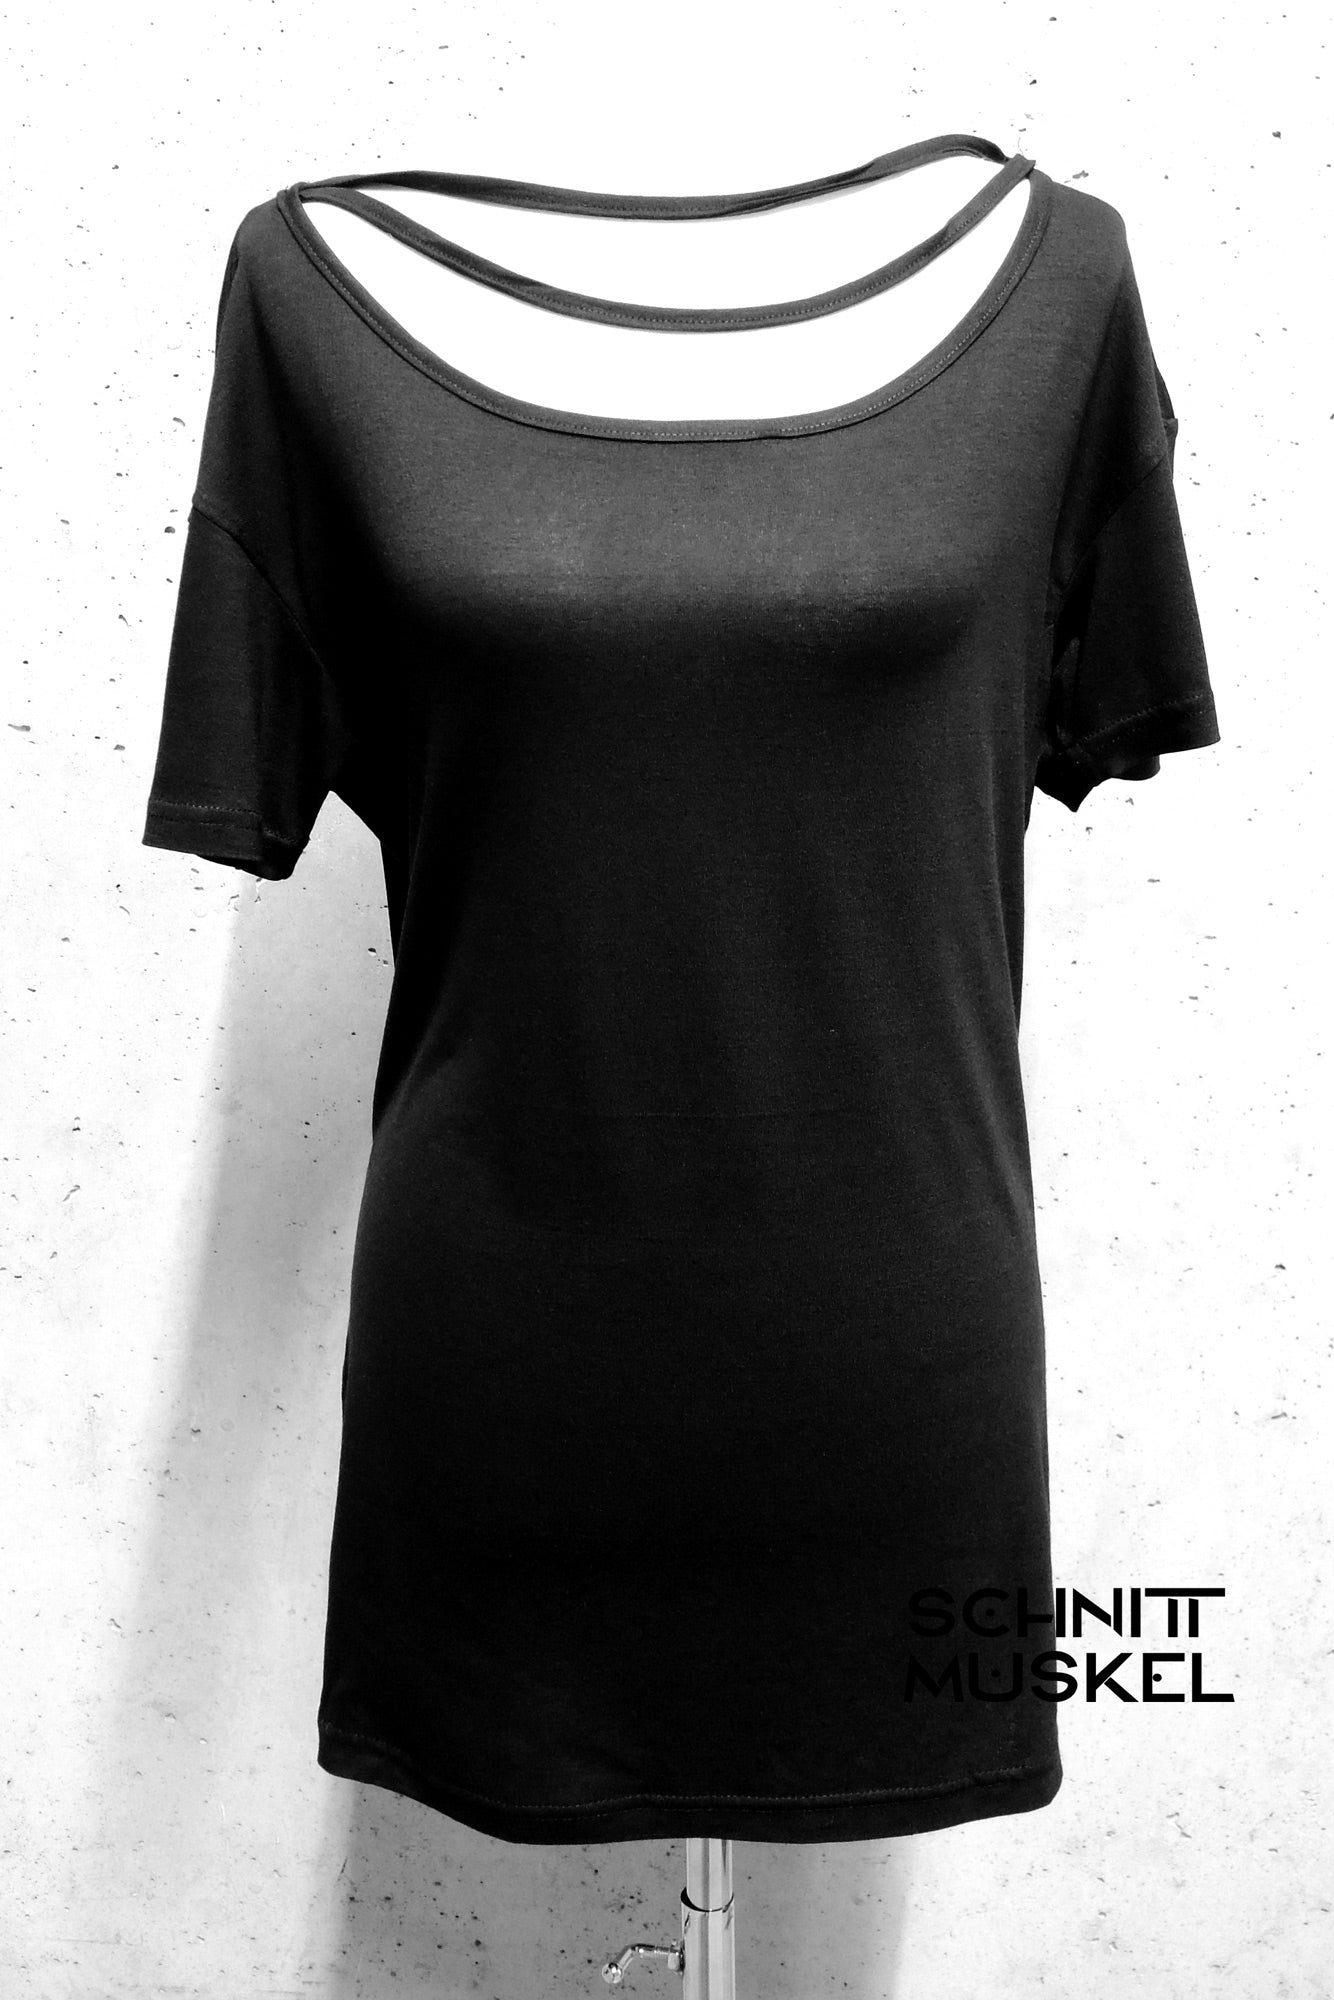 Gothicmode für Damen, darkavantgarde MOde für Damen, schwarze Mode für Damen, raffiniertes oversized shirt, Shirt mit Bändern, darkwear